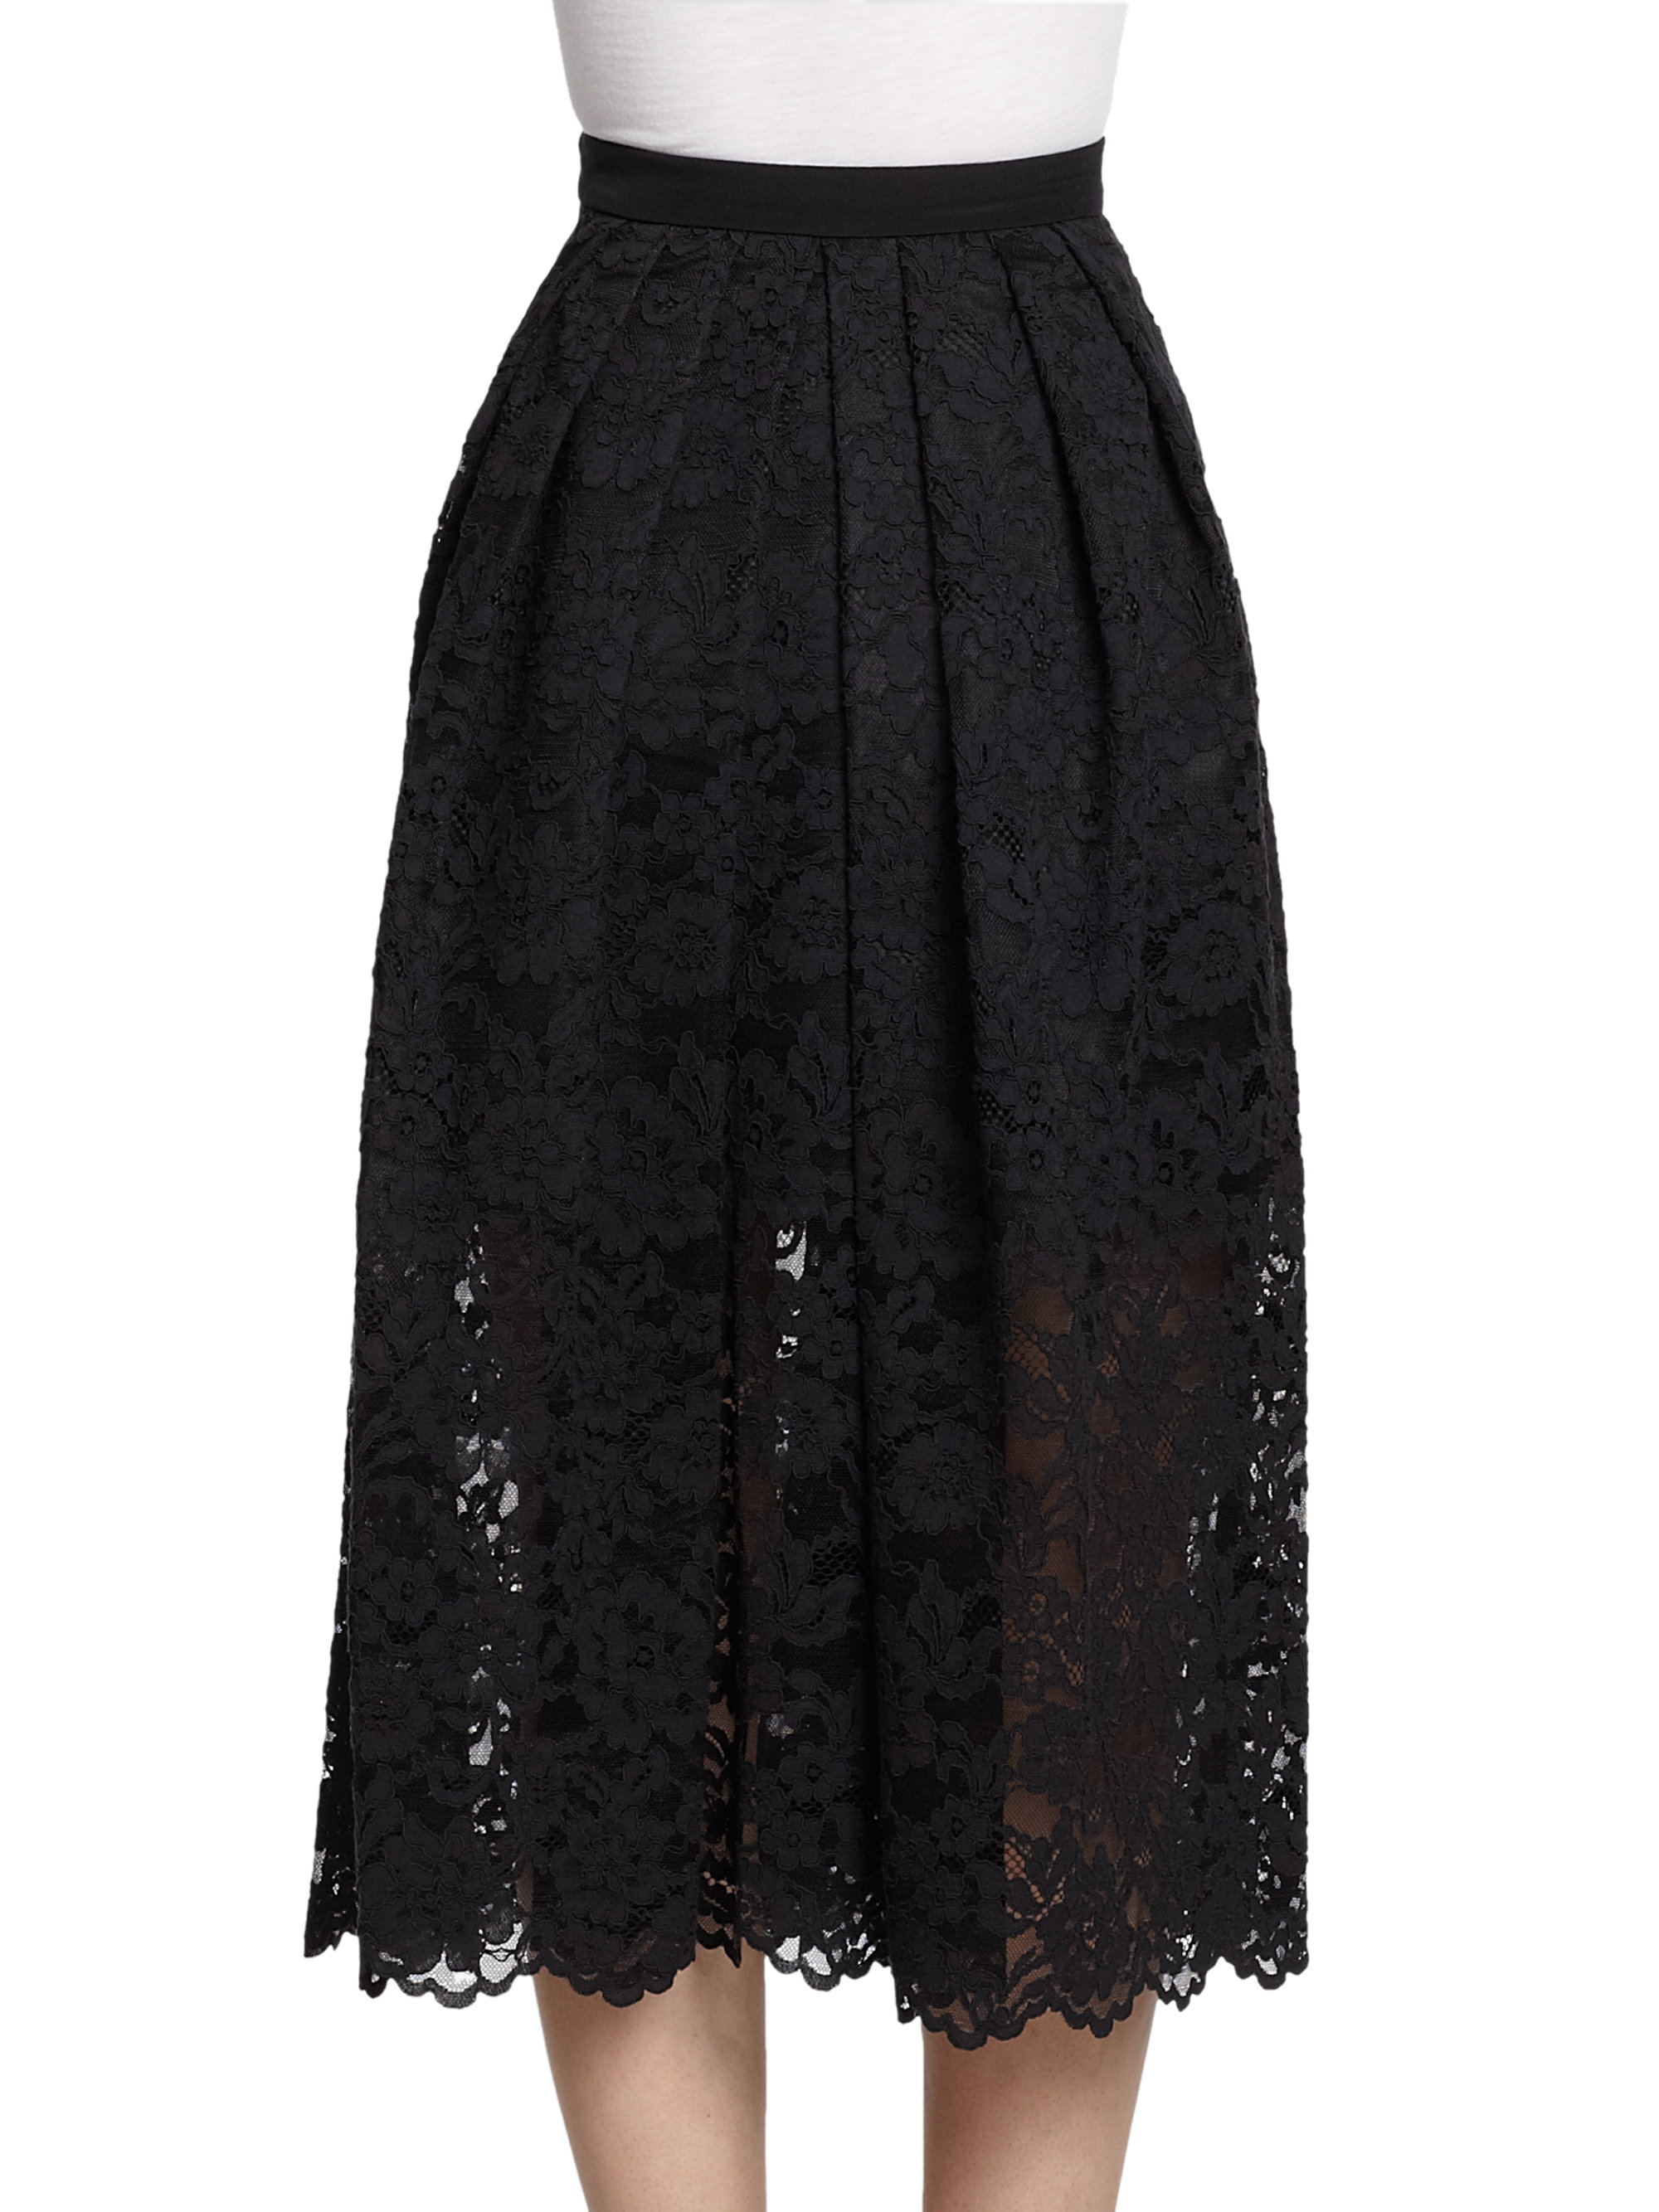 Tibi Lace Midi Skirt in Black - Lyst